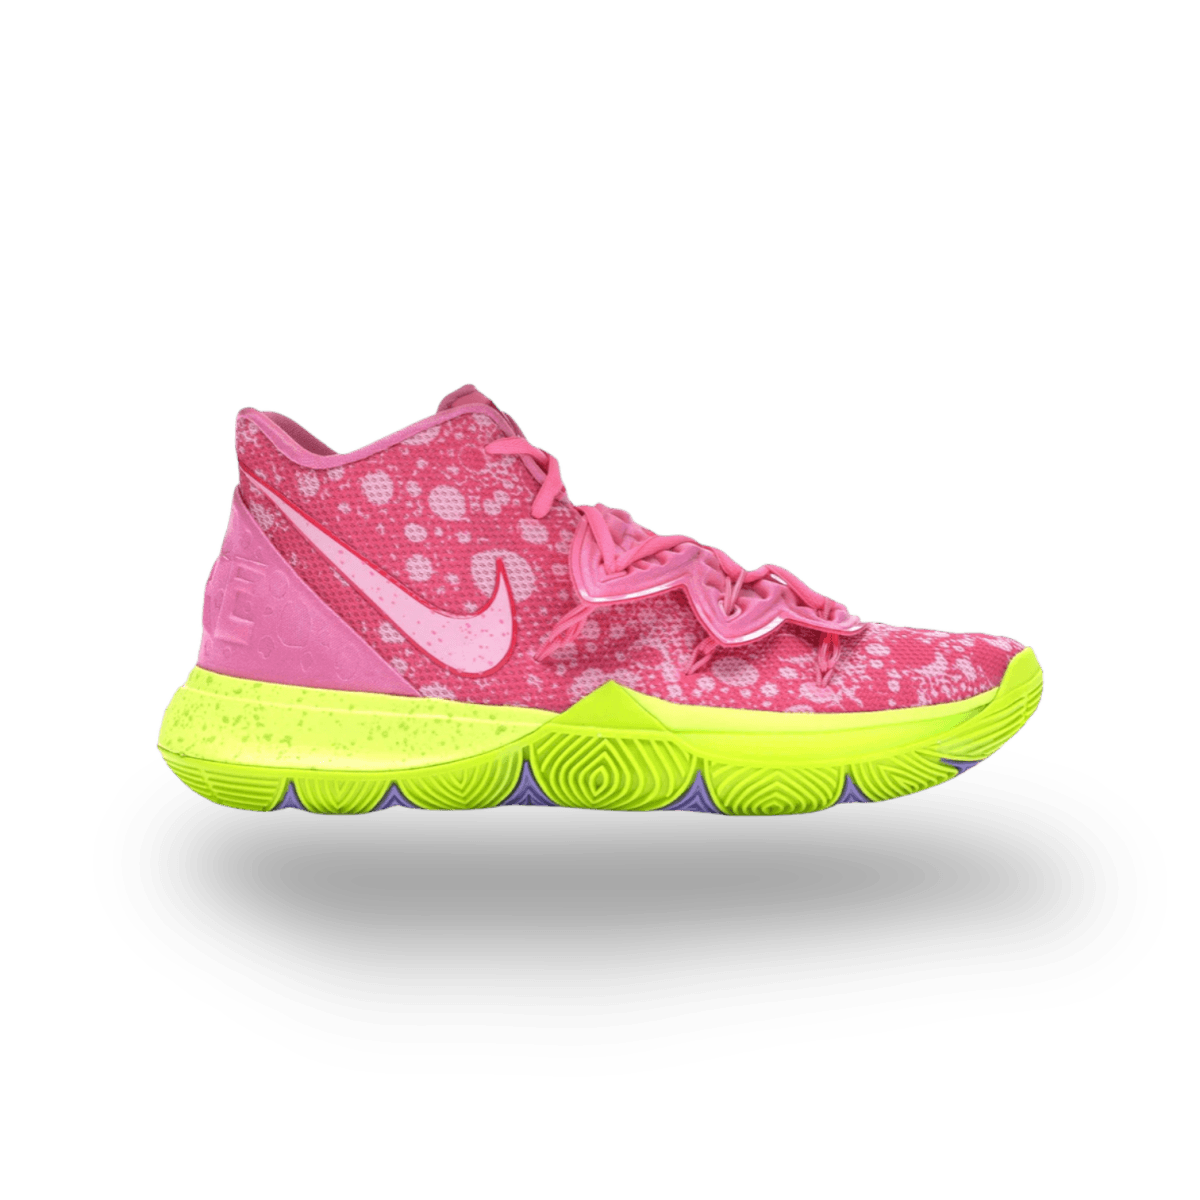 Kyrie 5 Spongebob Patrick - Mid Sneaker - Nike - Jawns on Fire - sneakers